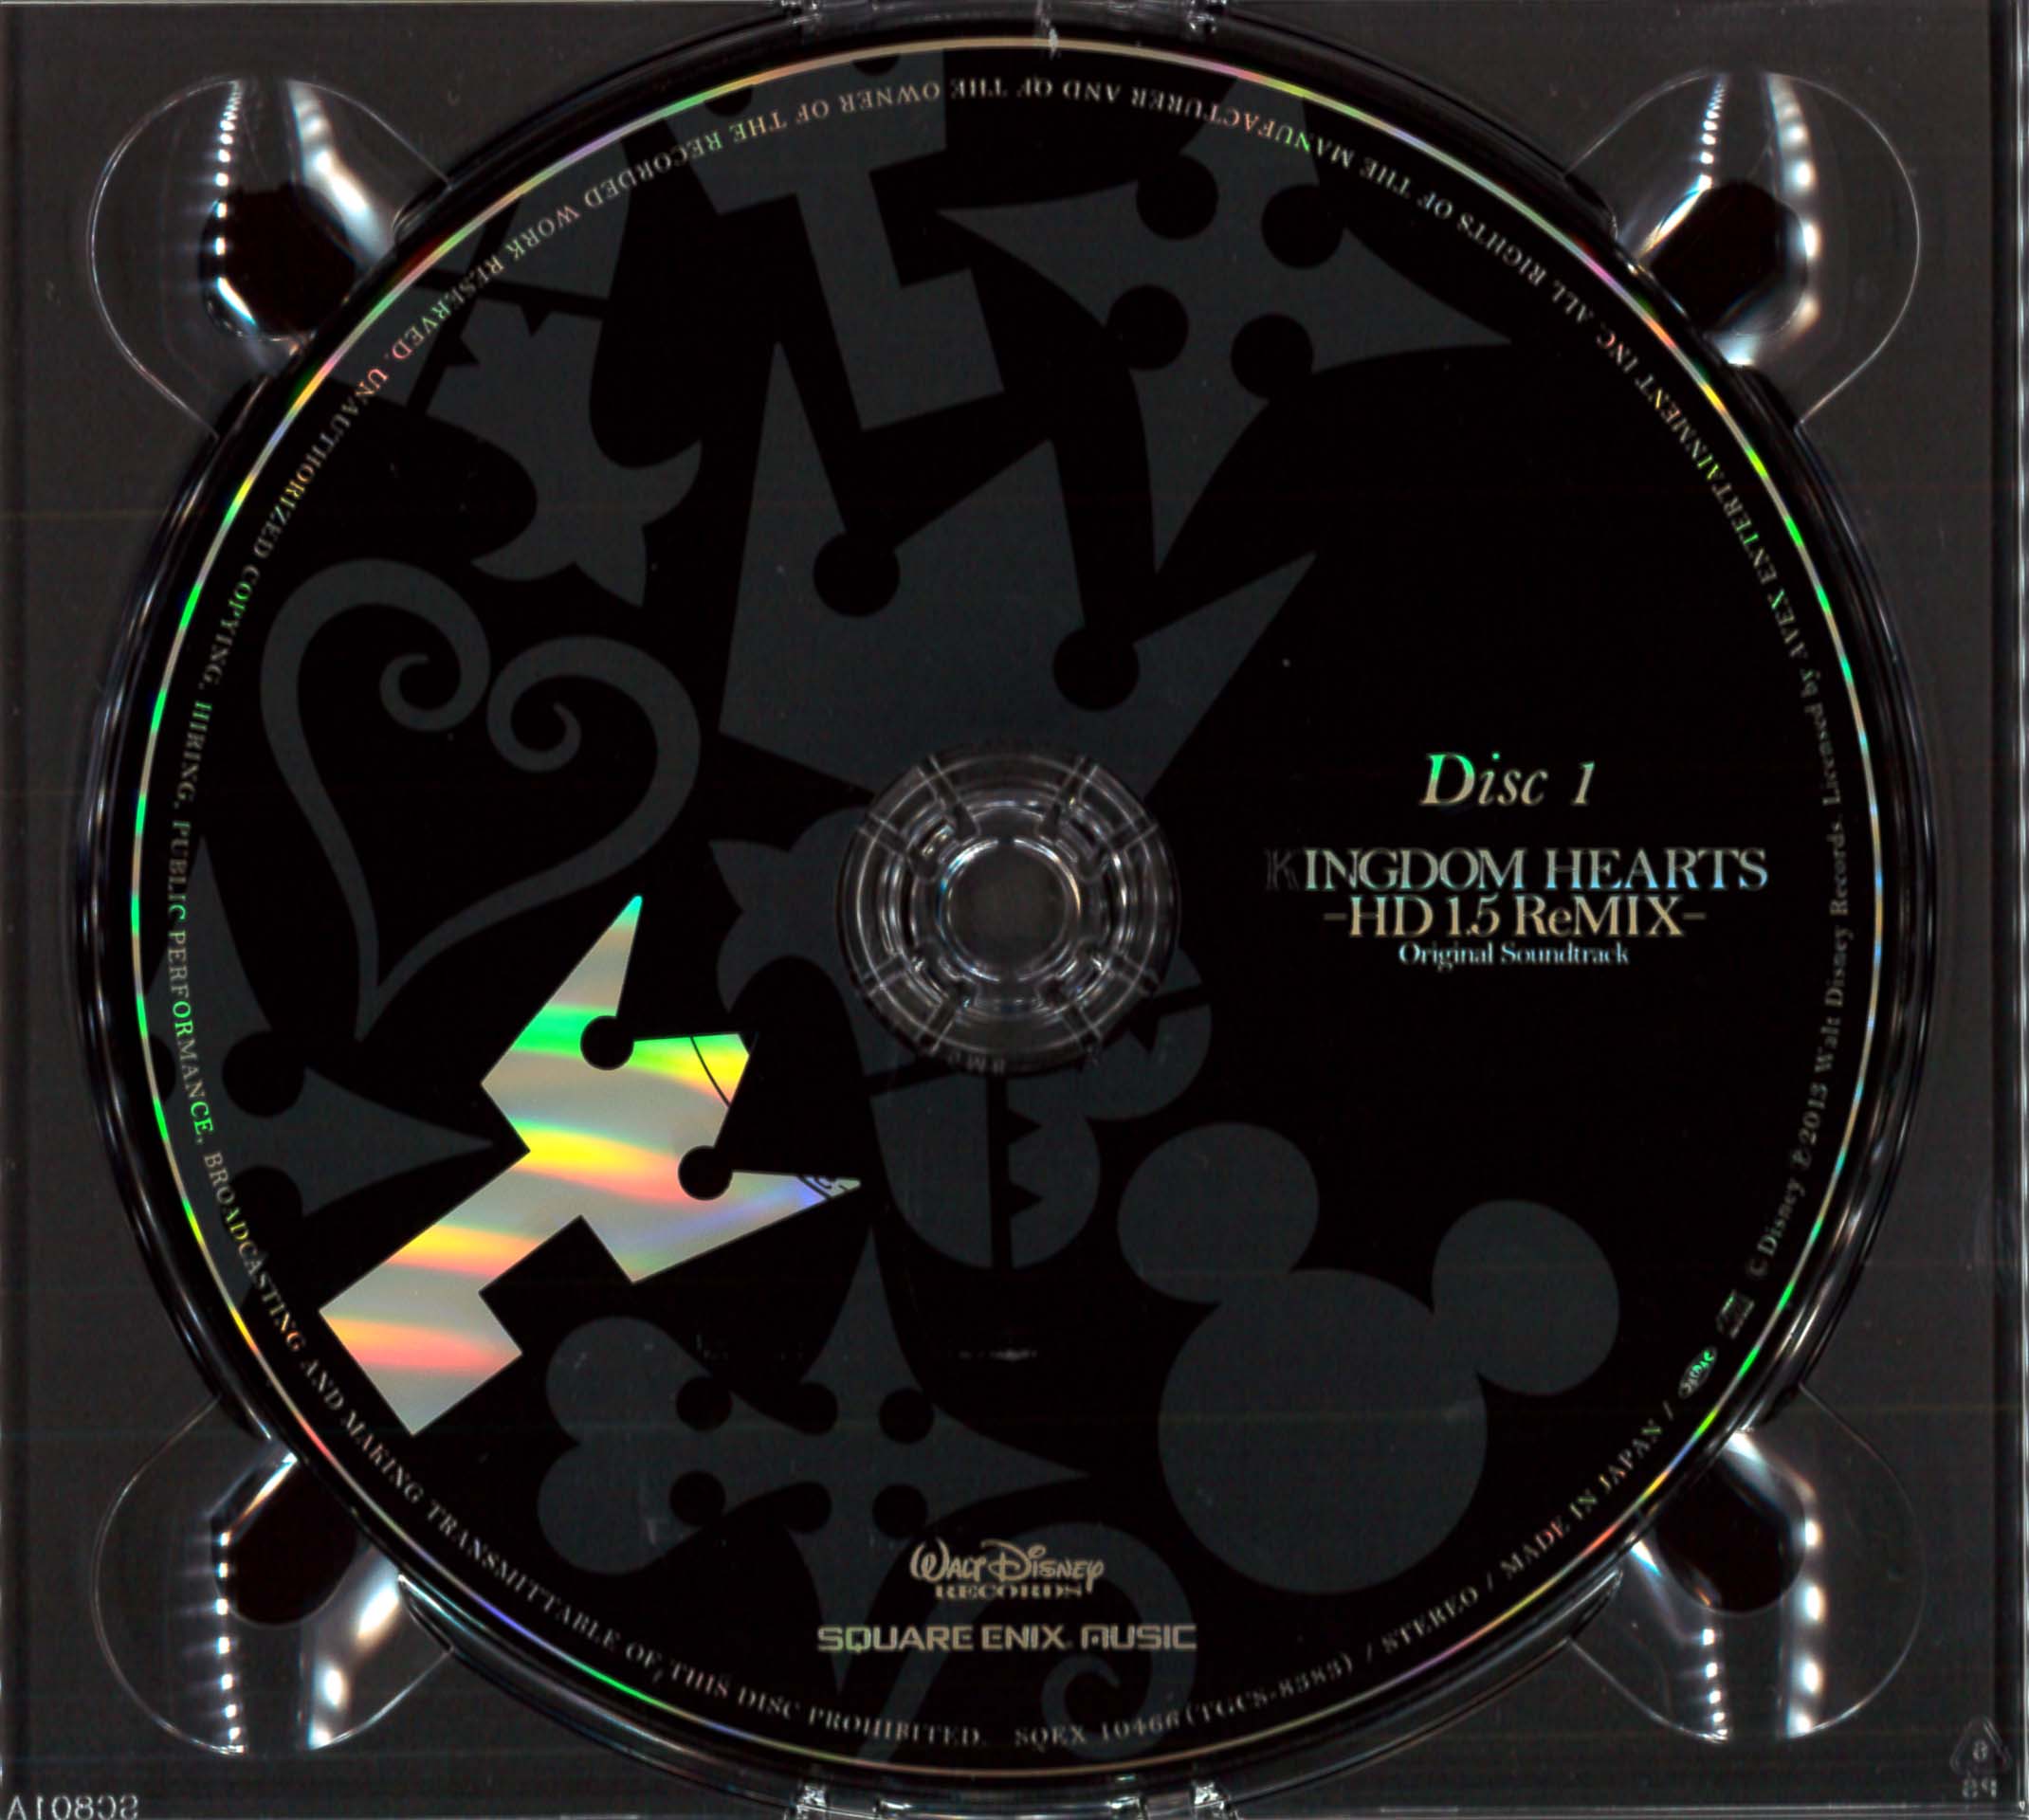 KINGDOM HEARTS -HD 1.5 ReMIX- Original Soundtrack (2014) MP3 